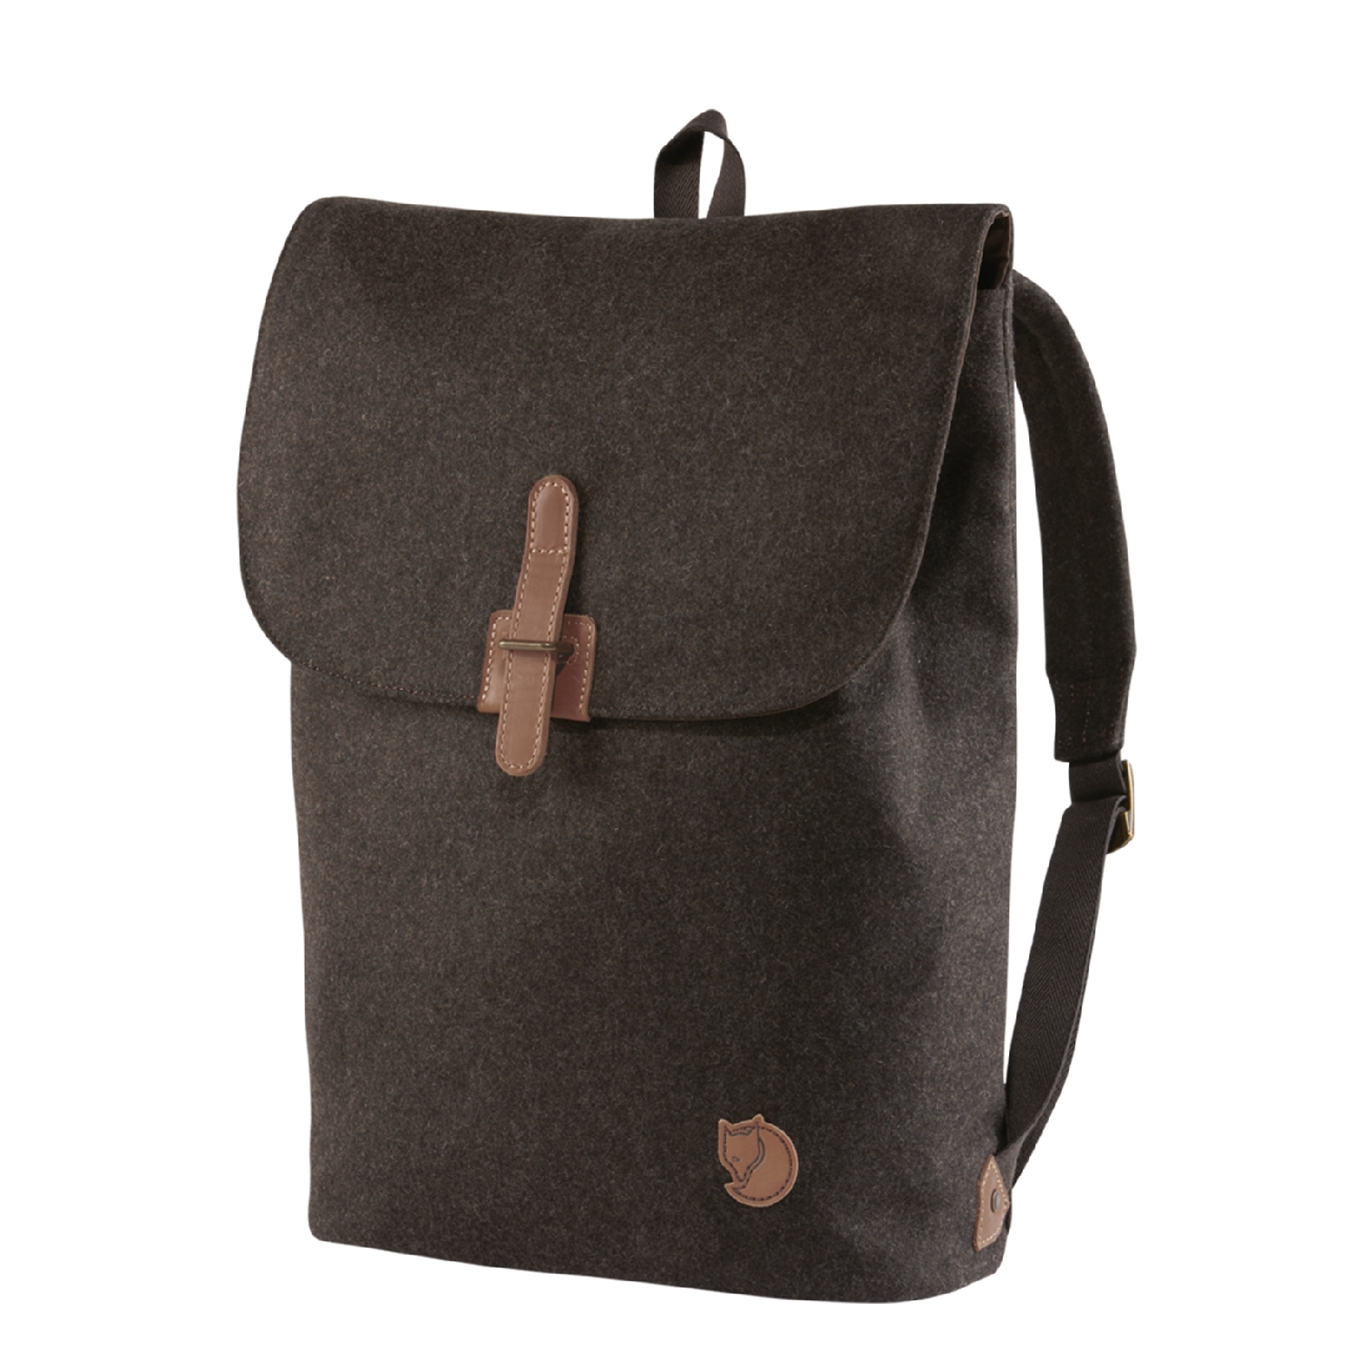 Fjallraven Norrvage Foldsack brown backpack